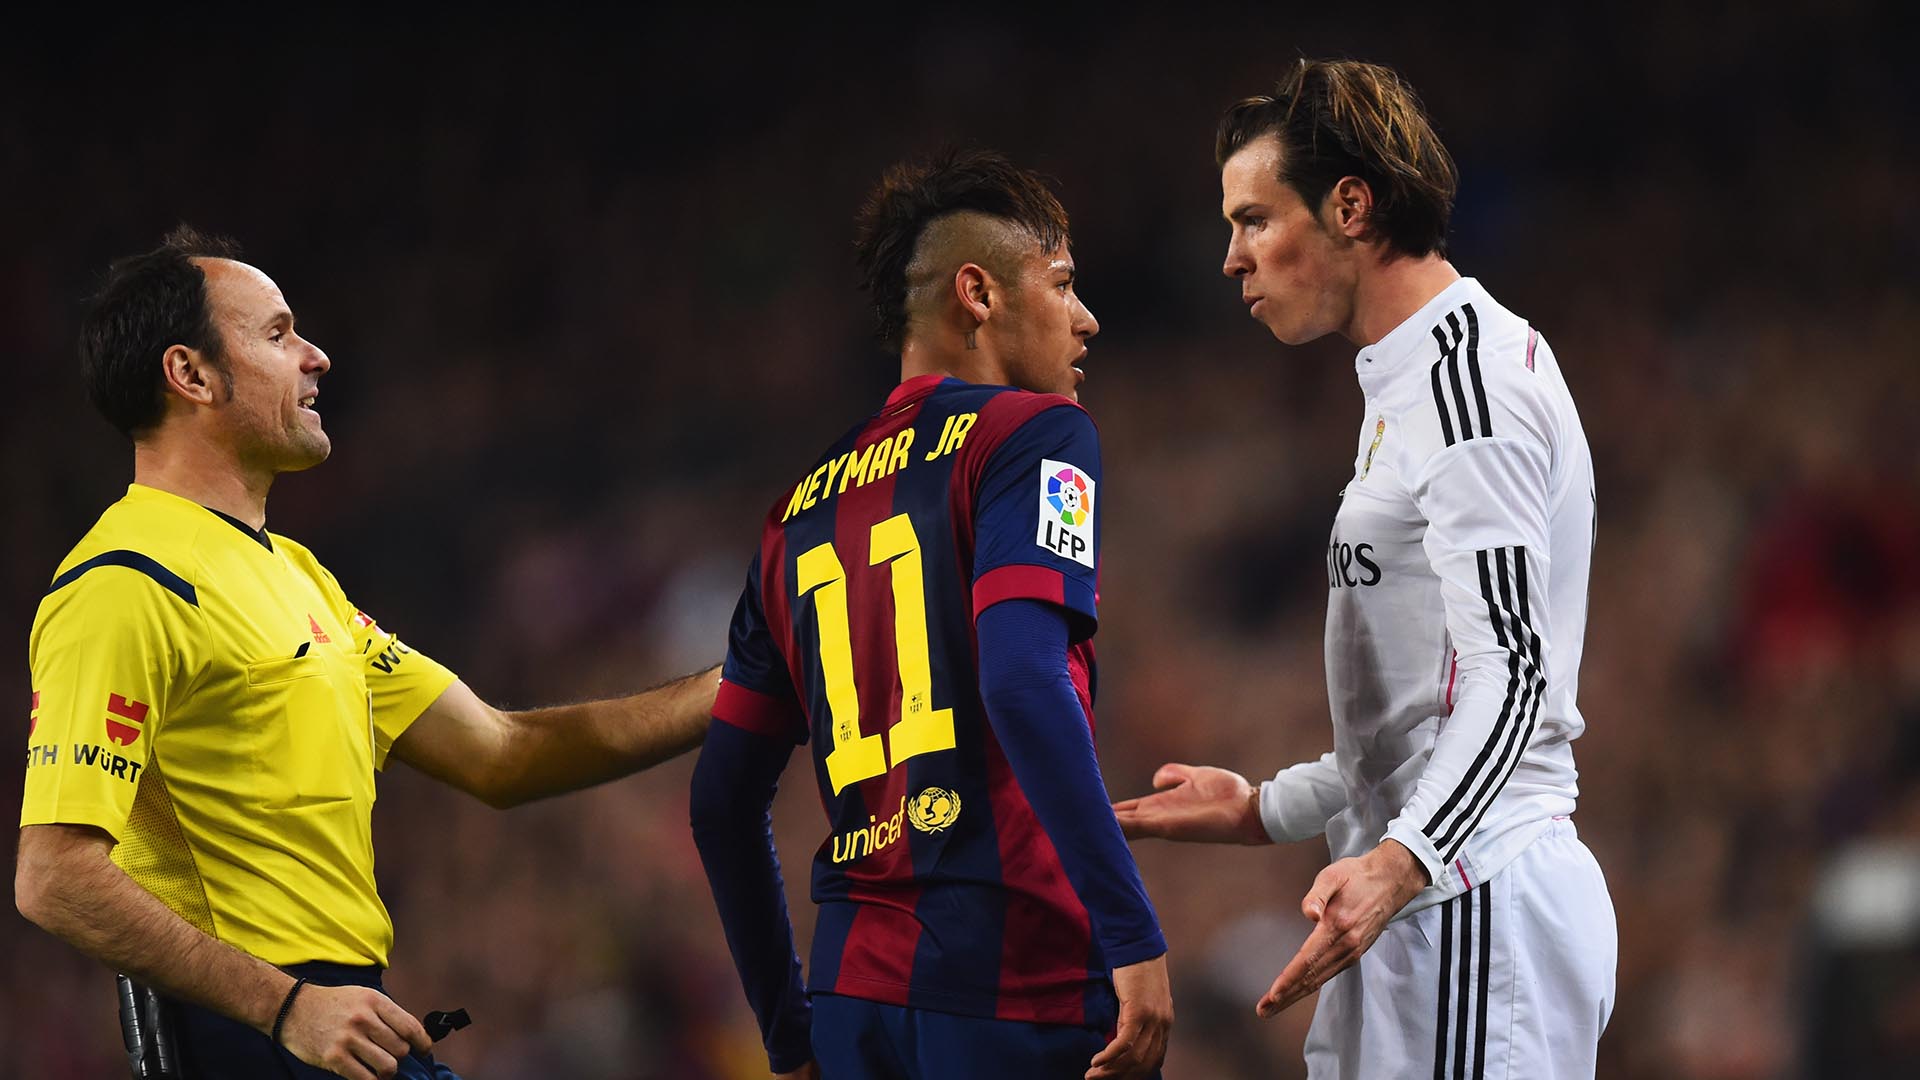 El mercado de fichajes ha dado un vuelco radical en la última década para los dos gigantes del fútbol español. Real Madrid y Barcelona firmaban hace ya once años dos traspasos récord como Gareth Bale y Neymar Jr. Ambos copaban el mercado.